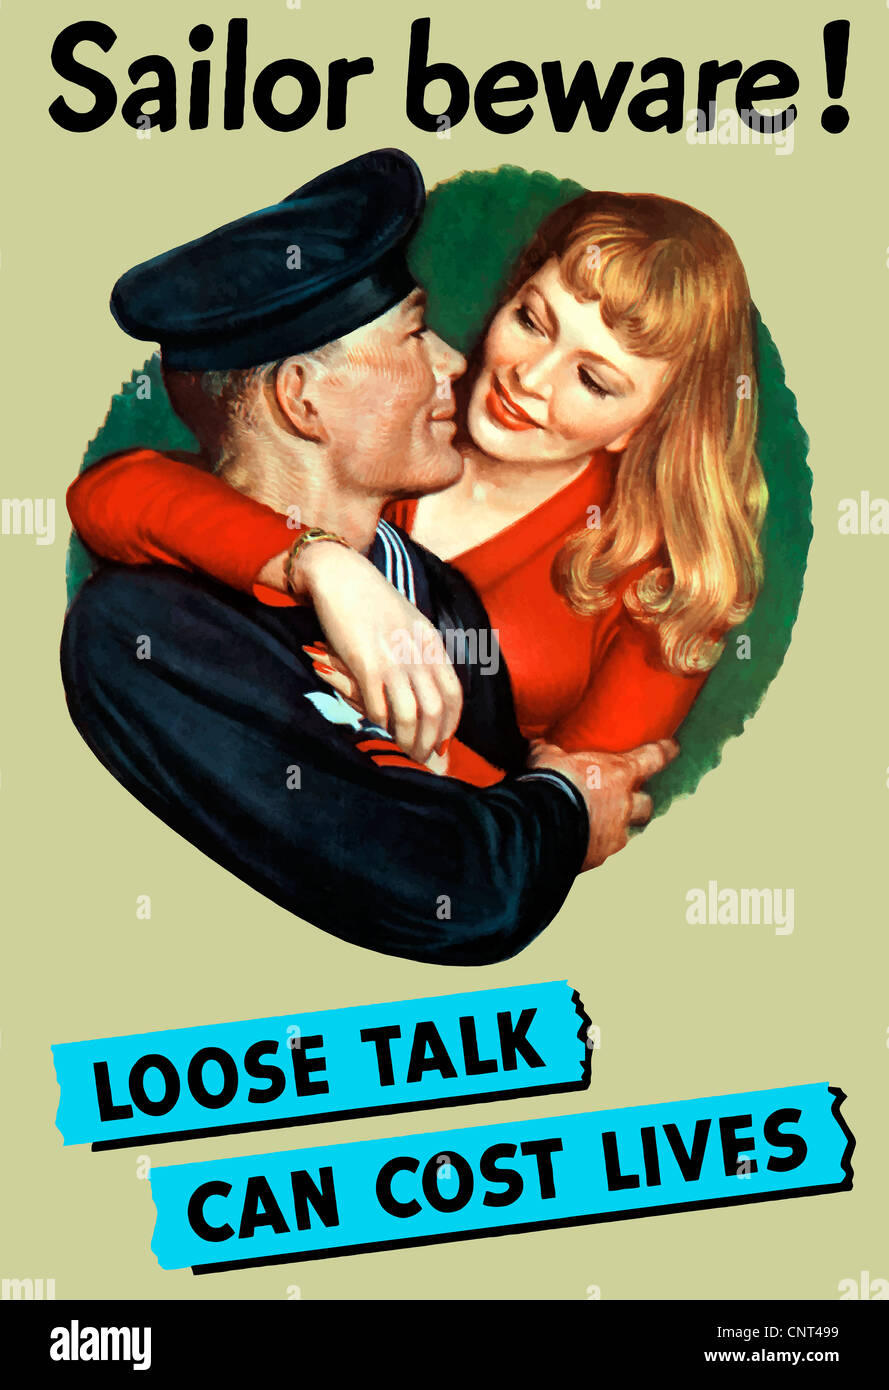 Vintage II Guerra Mondiale manifesto di un marinaio e una ragazza avvolgente. Si legge, marinaio Attenzione! Loose parlare un costo in termini di vite umane. Foto Stock